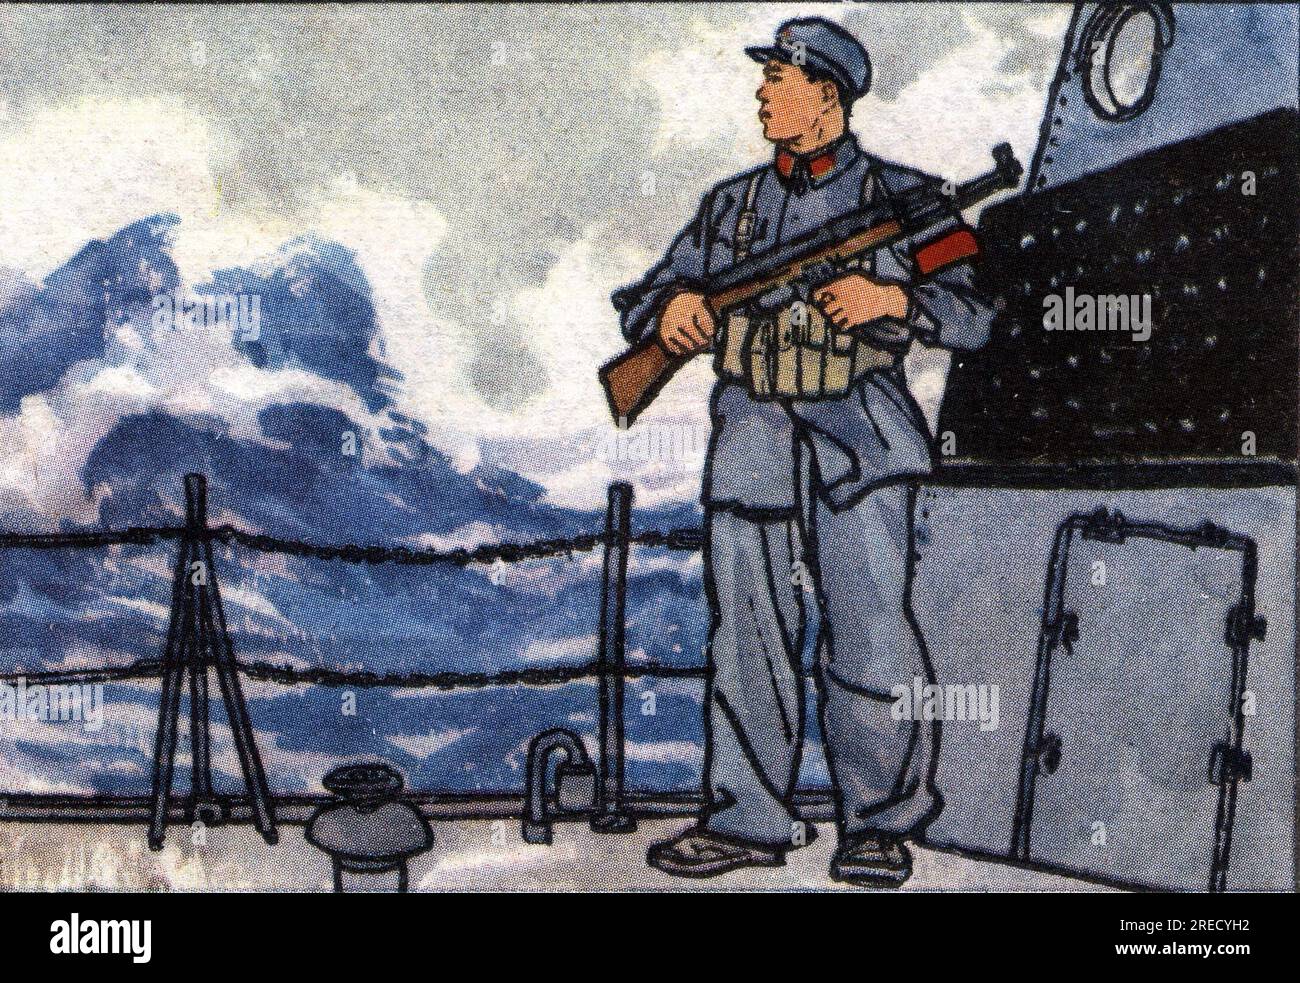 Propagande chinoise : Mai Xian De est blesse pendant la bataille navale contre Taiwan, mais il reste à son poste et assiste à la victoire de la Republique de Chine en 1965. Chine, 1971. Stock Photo